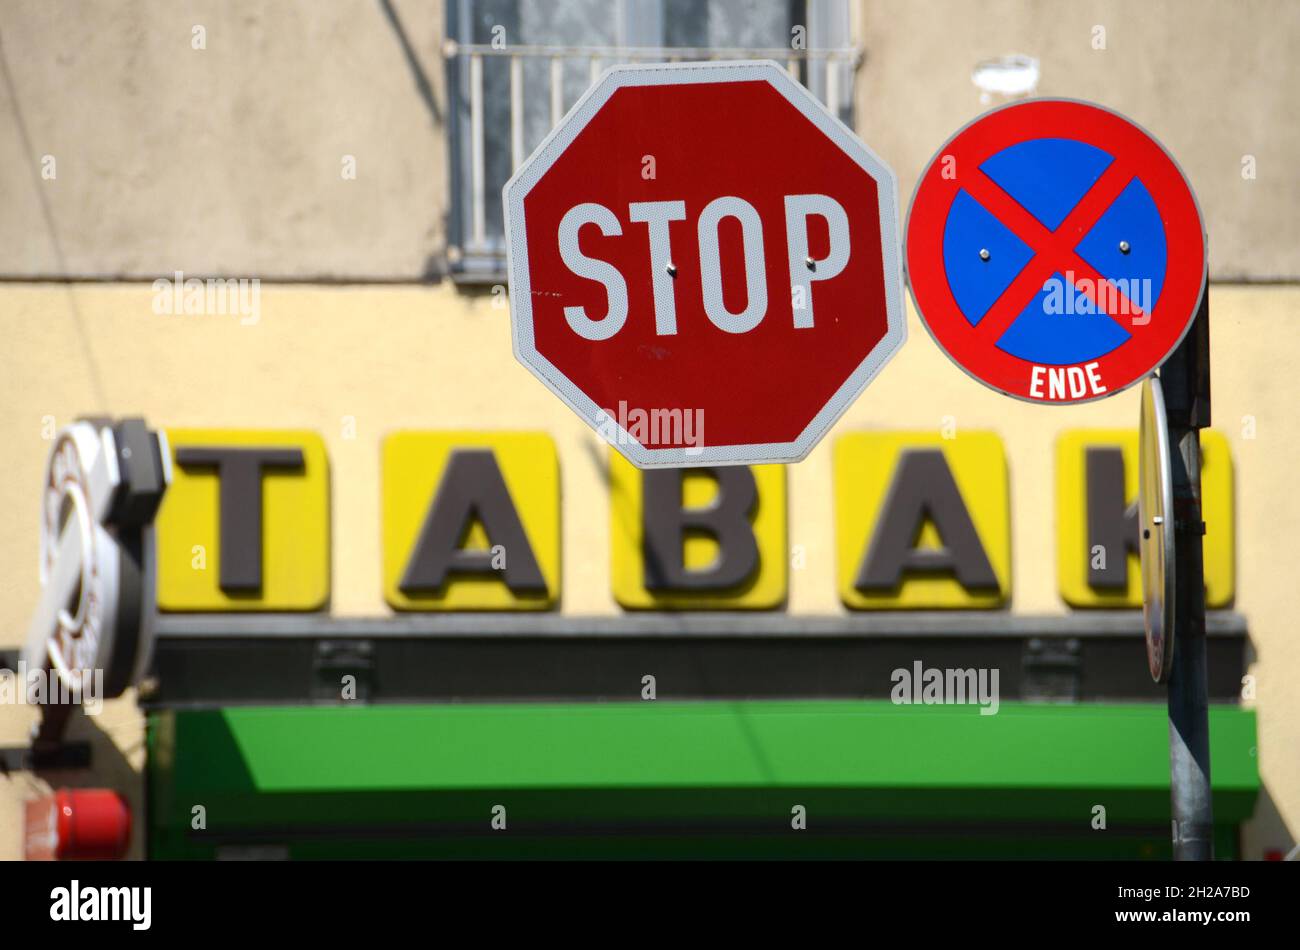 Stop-Schild vor einer Tabak-Trafik in Österreich, Europa - Stop sign in front of a tobacco shop in Austria, Europe Stock Photo